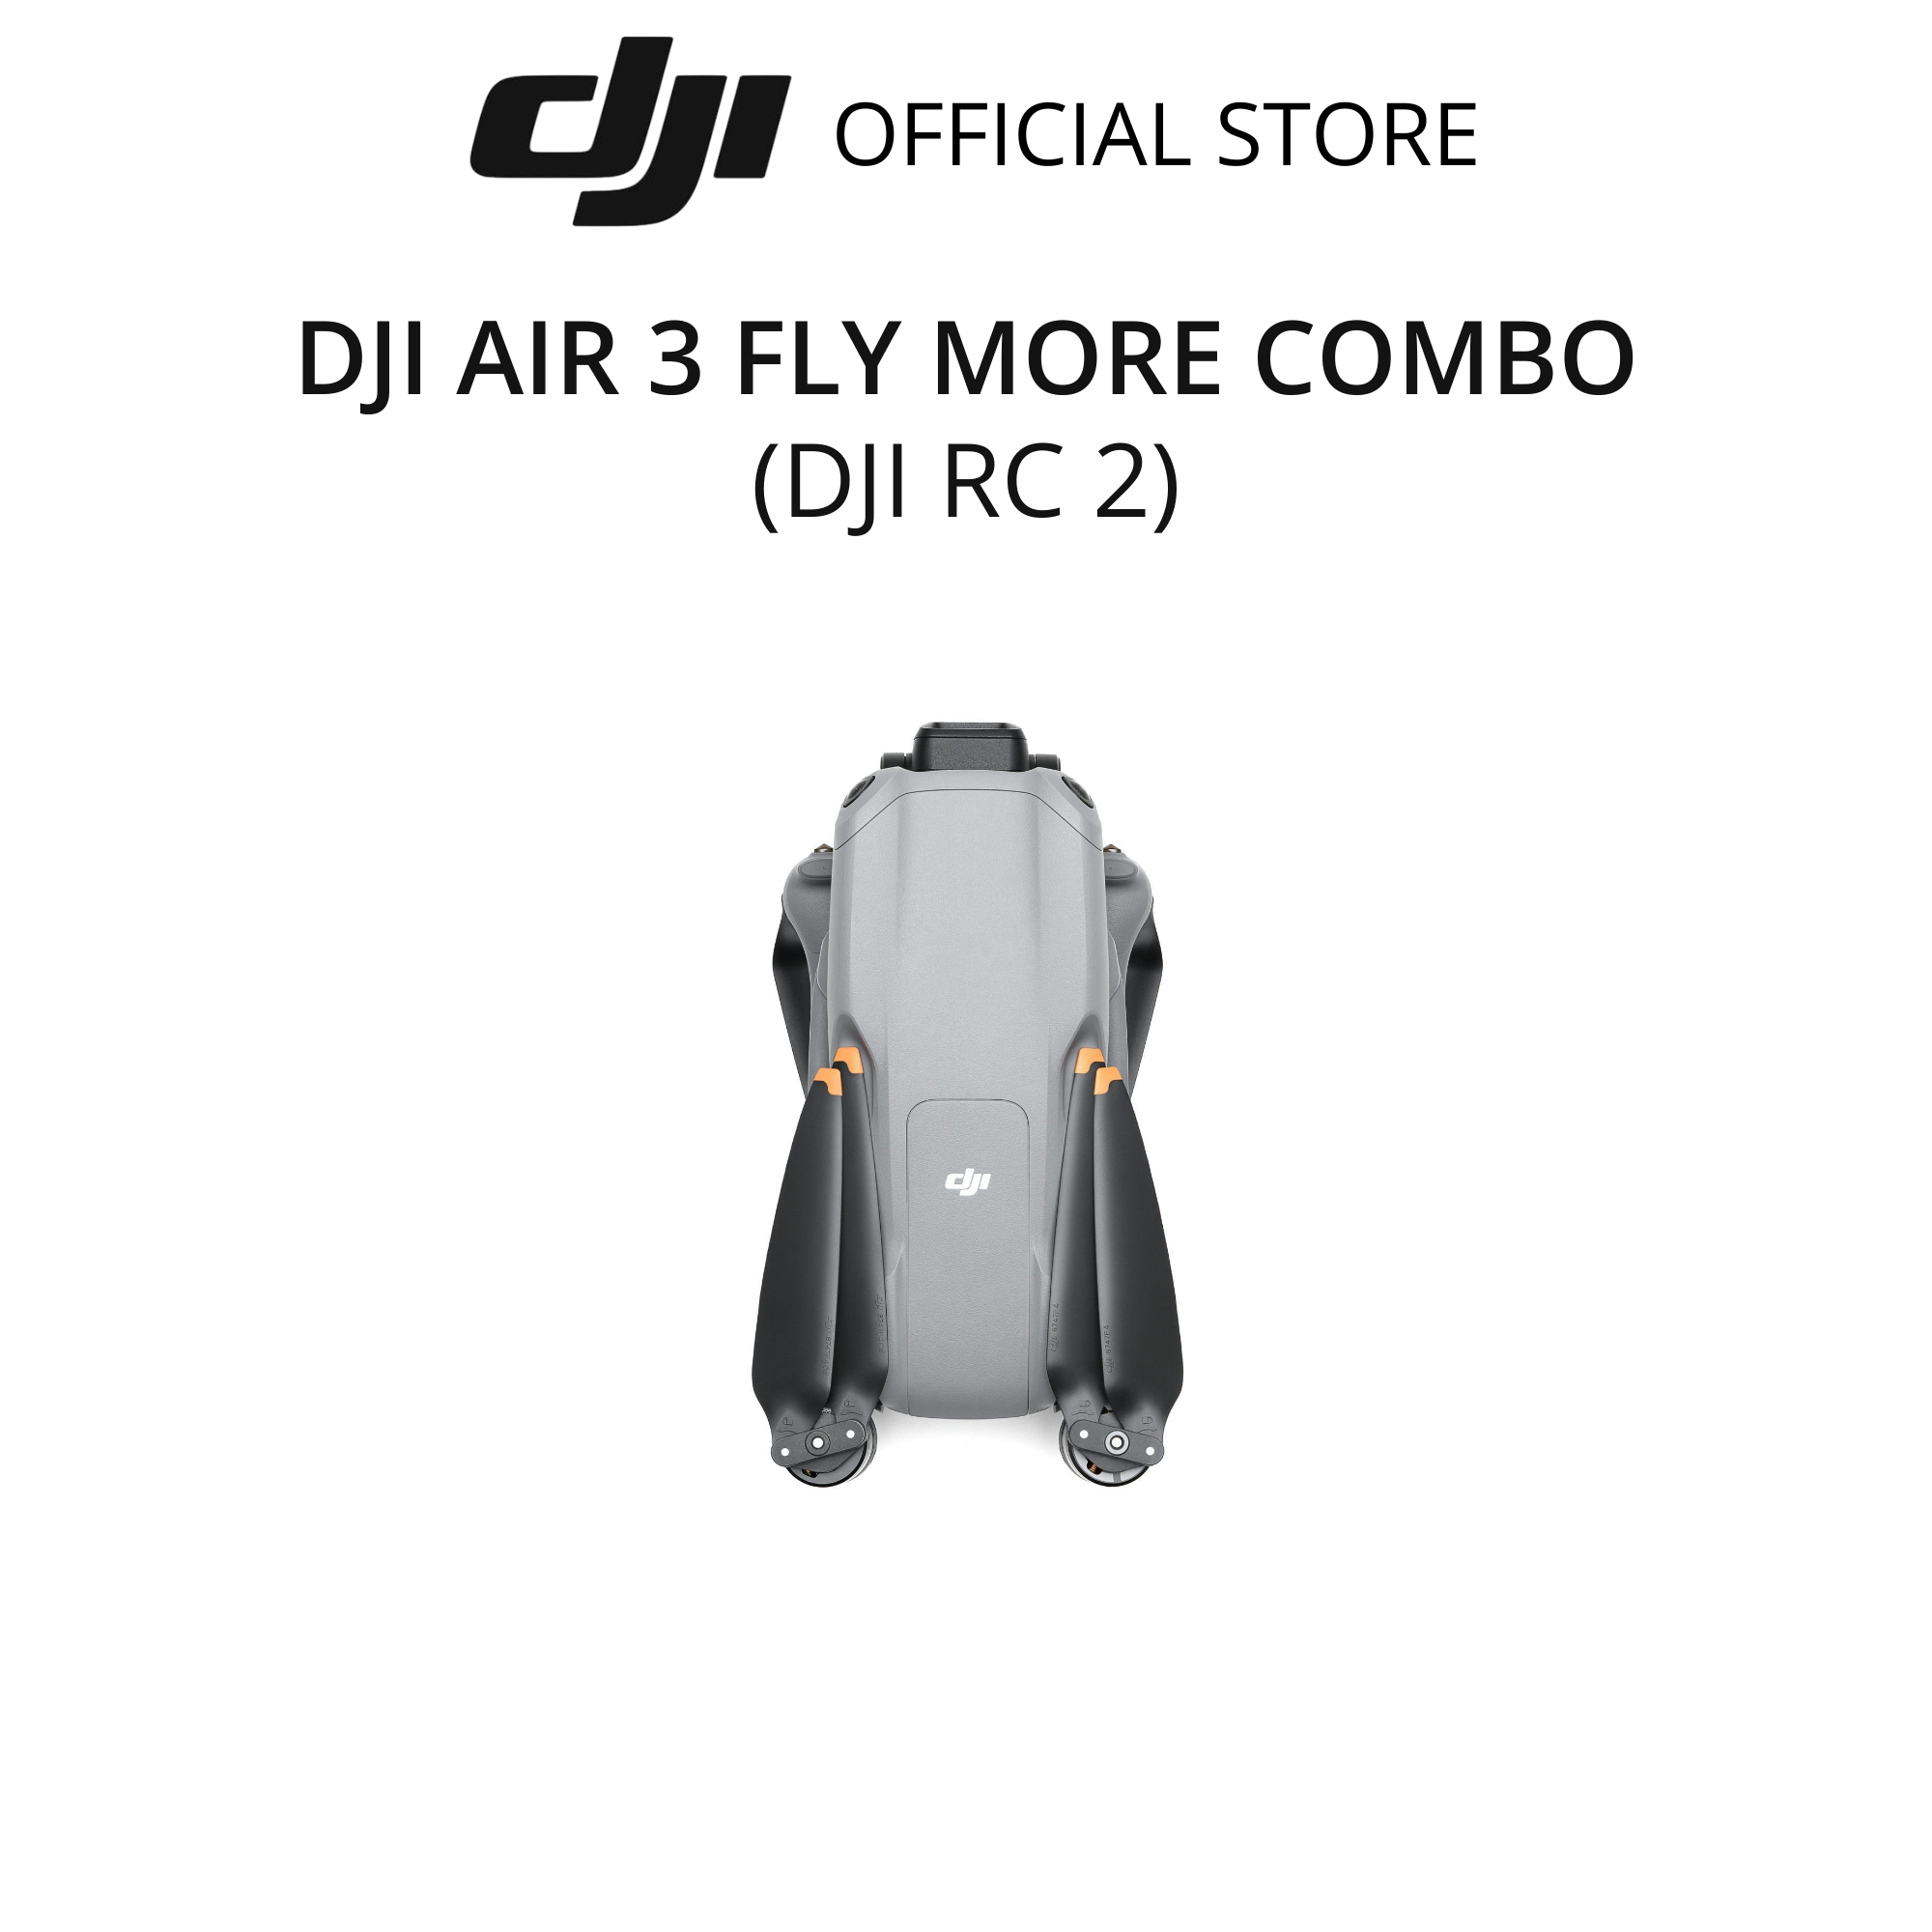 Flycam DJI Air 3 Fly More Combo kèm điều khiển có màn hình (DJI RC 2) camera kép quay video chất lượng 4K HDR - Hàng chính hãng